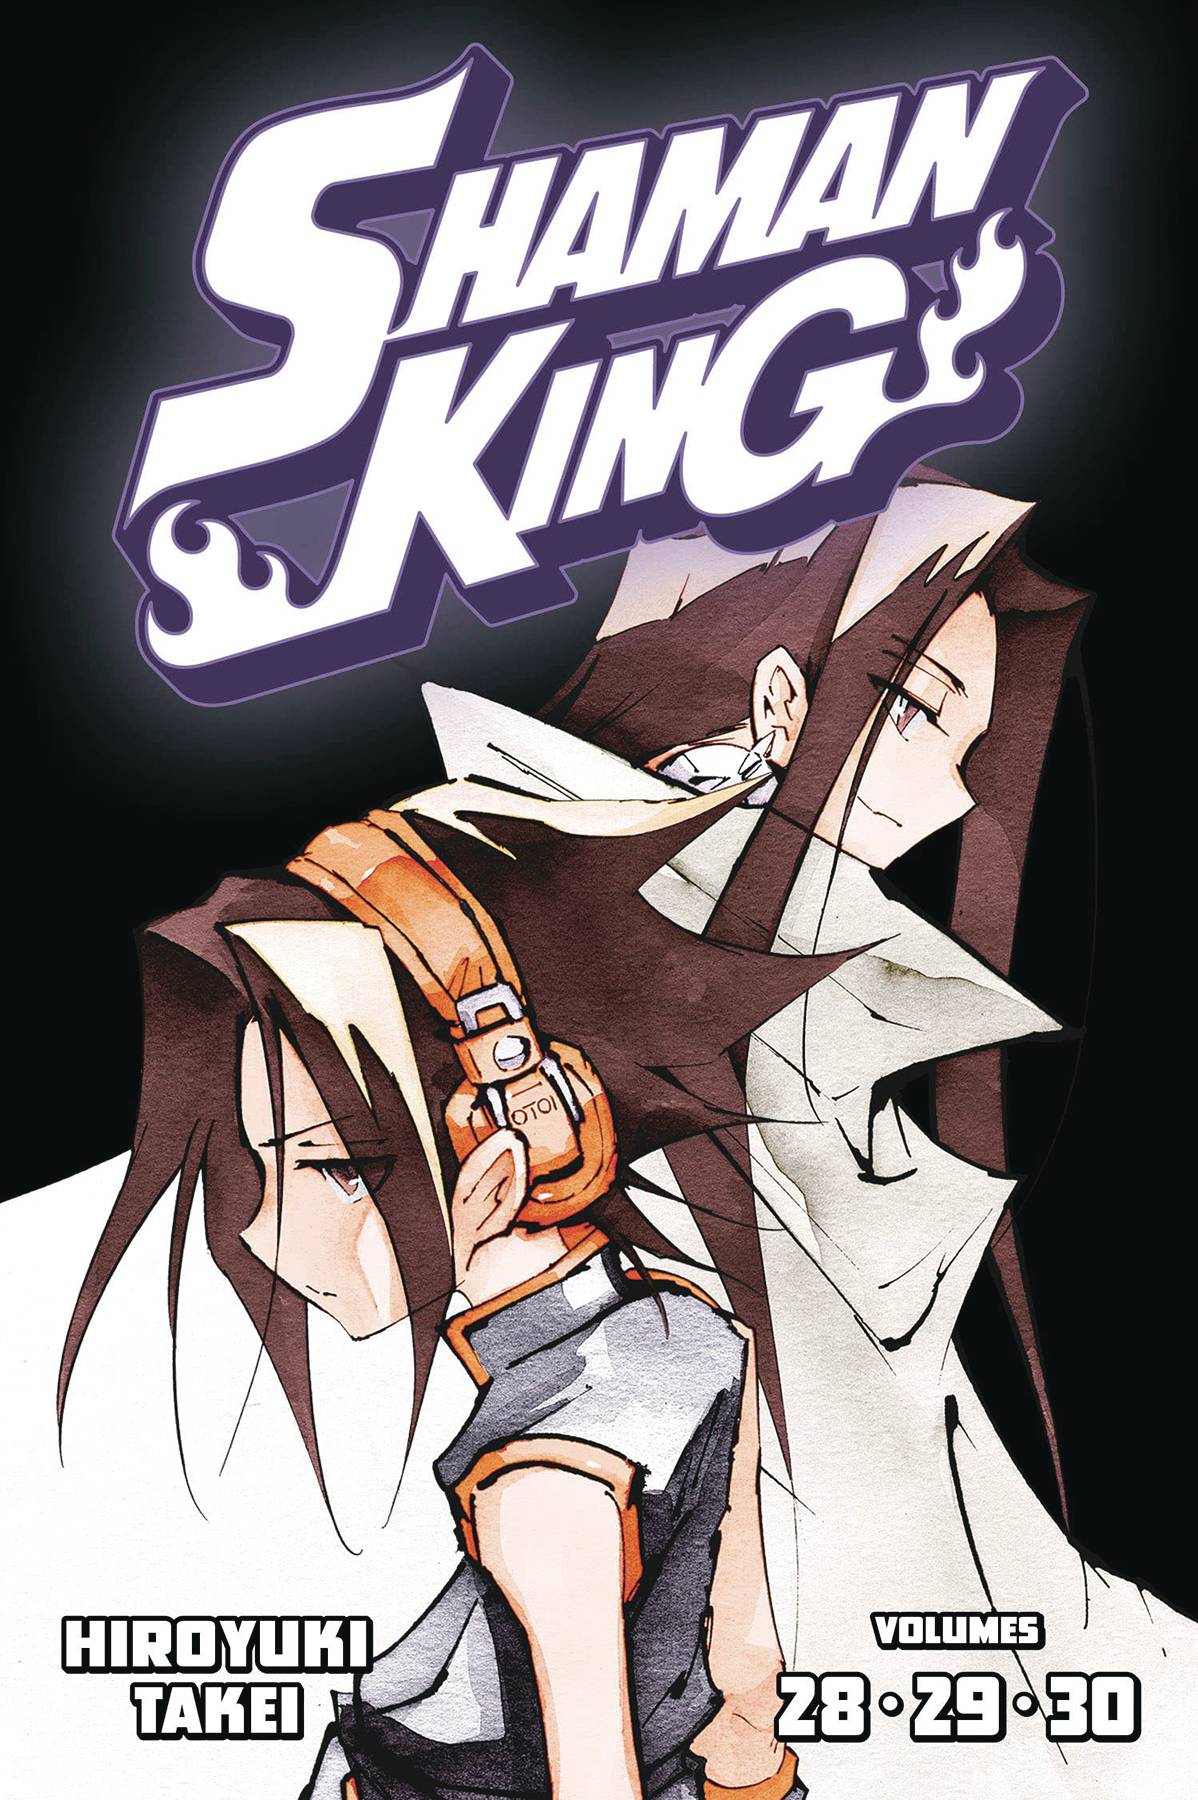 The One Stop Shop Comics & Games Shaman King Omnibus Tp Vol 10 (C: 0-1-1) (08/03/2022) KODANSHA COMICS